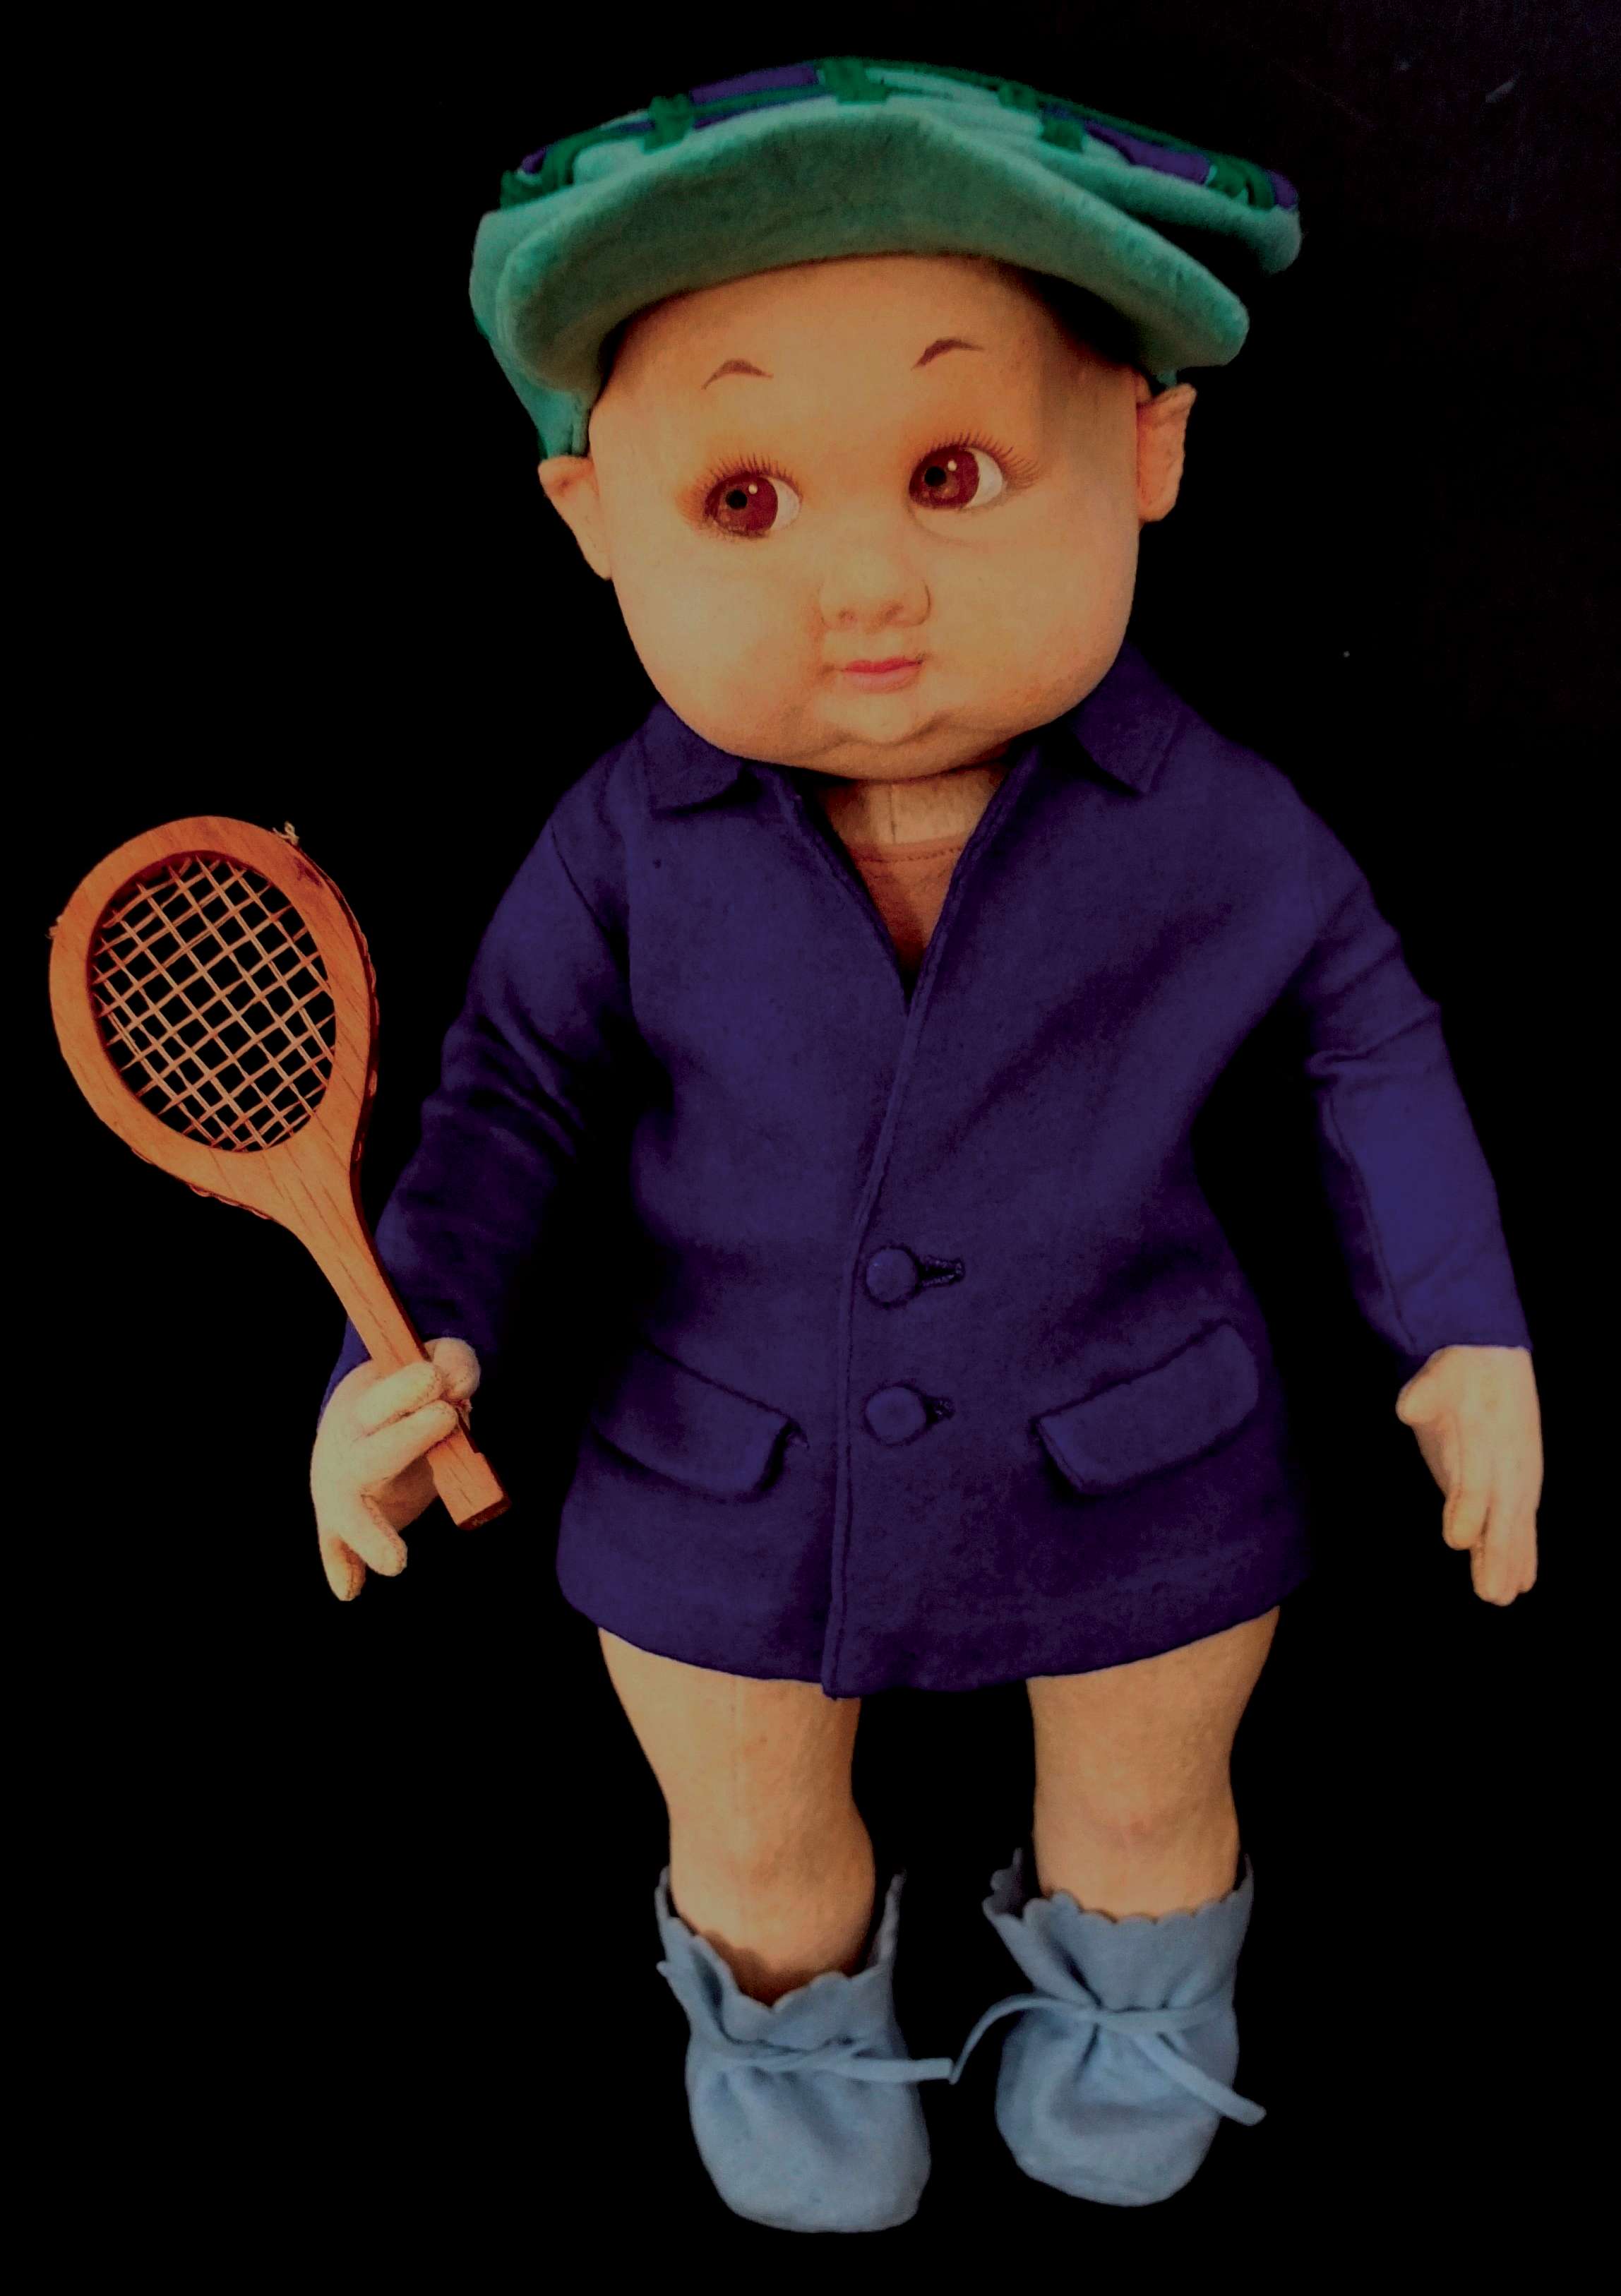 Ecco la mostra con le prime bambole Lenci dedicate al tennis